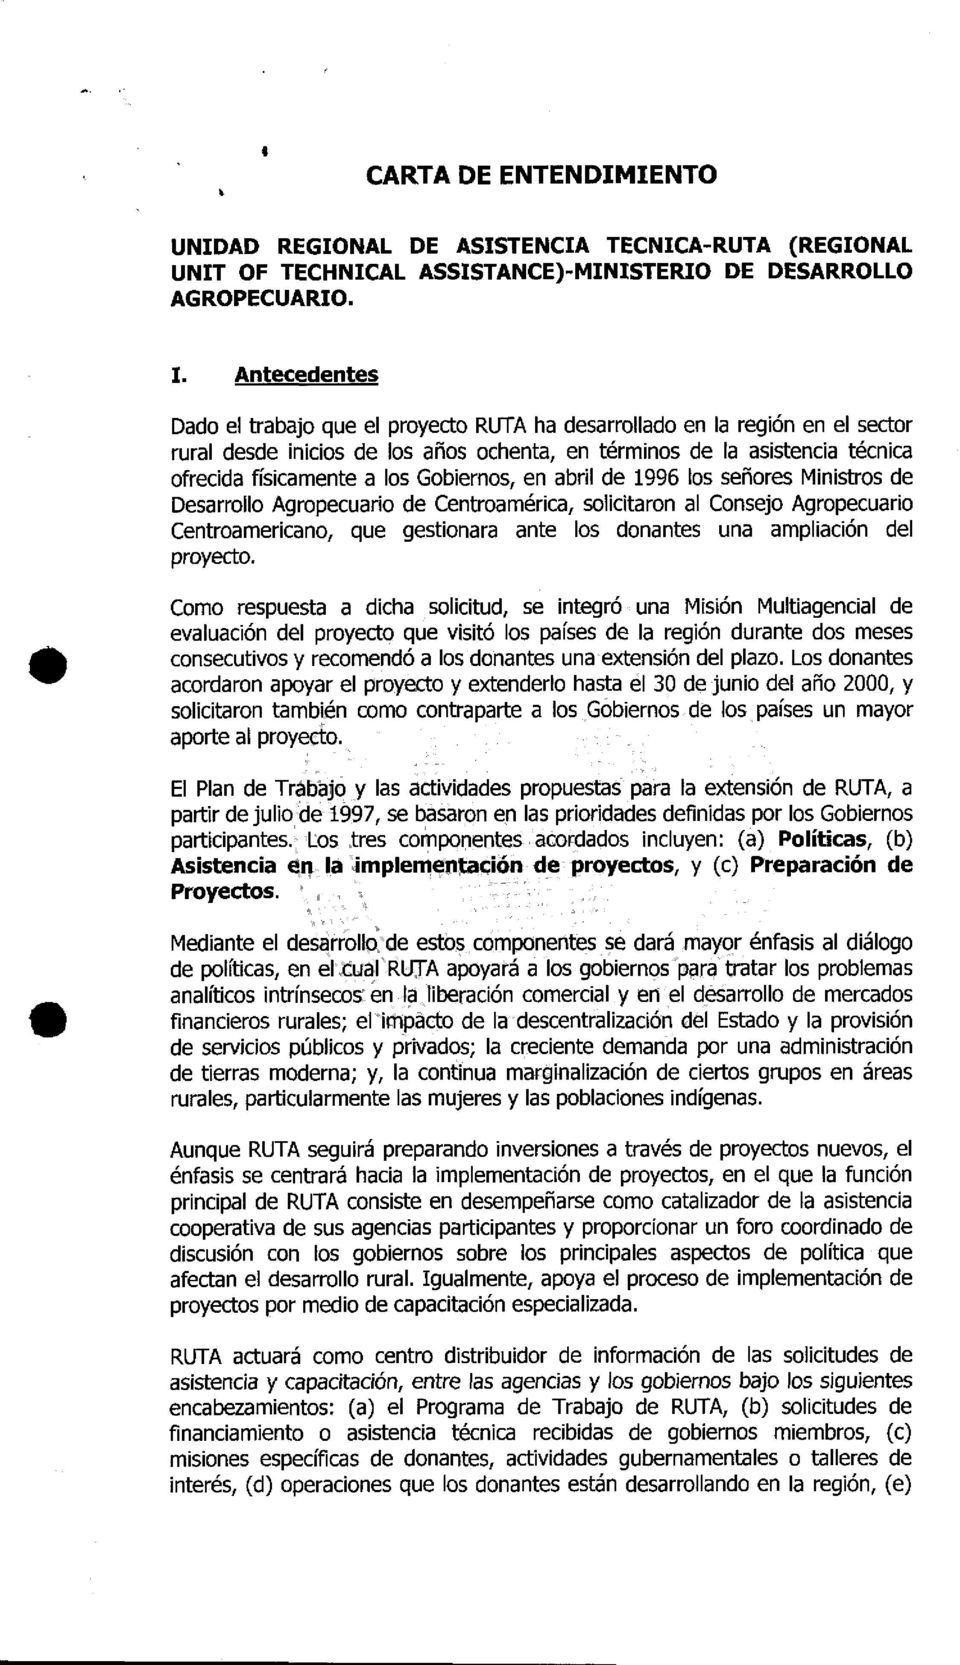 Gobiernos, en abril de 1996 los señores Ministros de Desarrollo Agropecuario de Centroamérica, solicitaron al Consejo Agropecuario Centroamericano, que gestionara ante los donantes una ampliación del